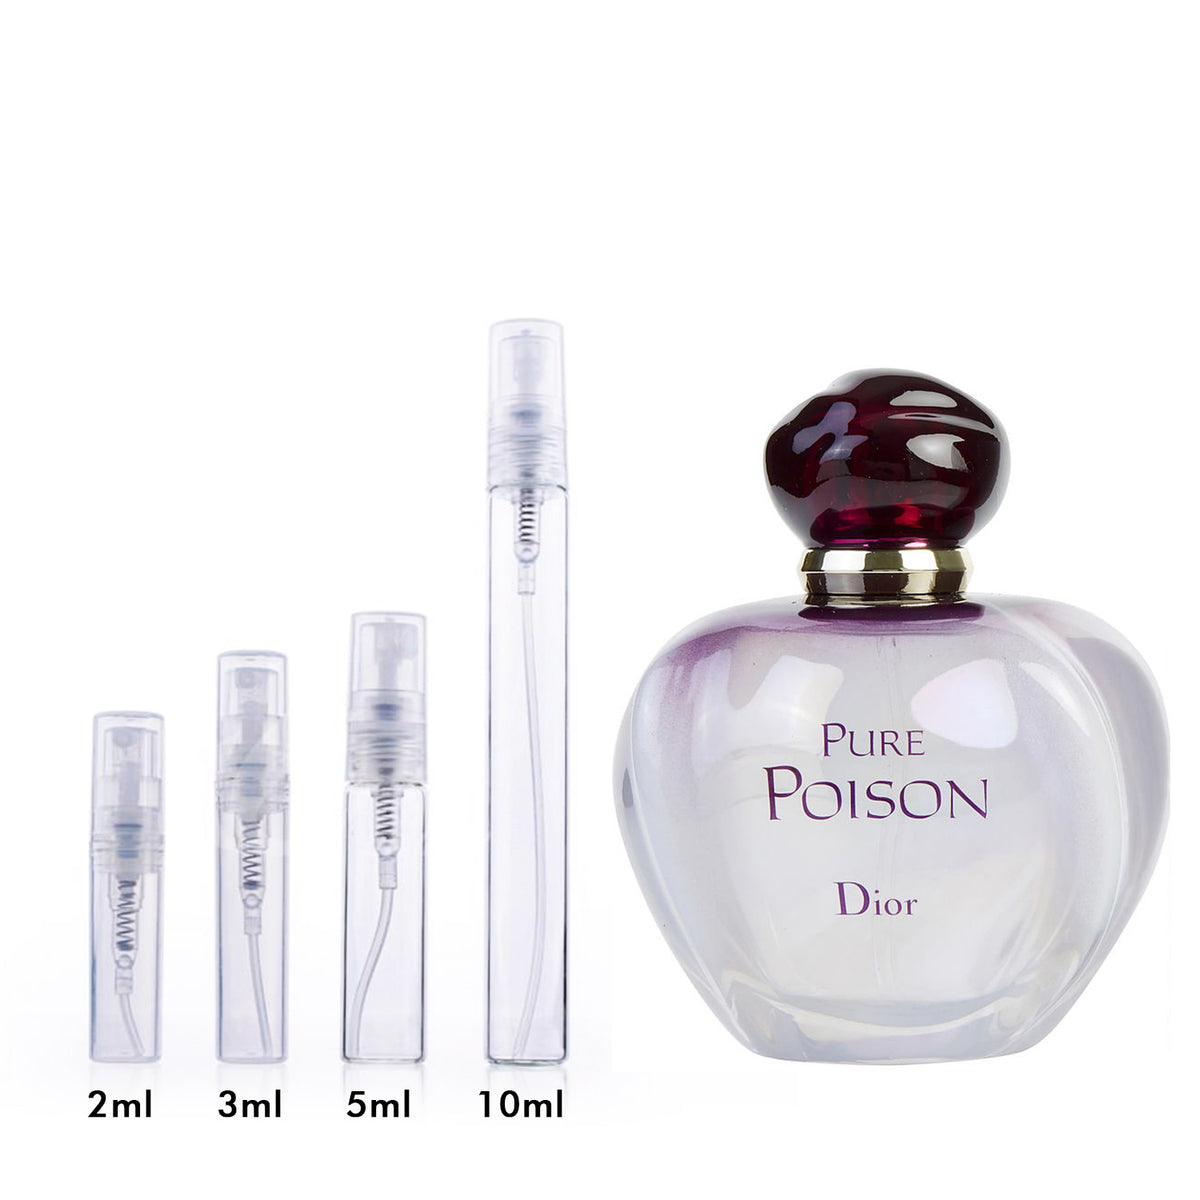 Christian Dior Pure Poison Eau De Parfum - 1 oz 